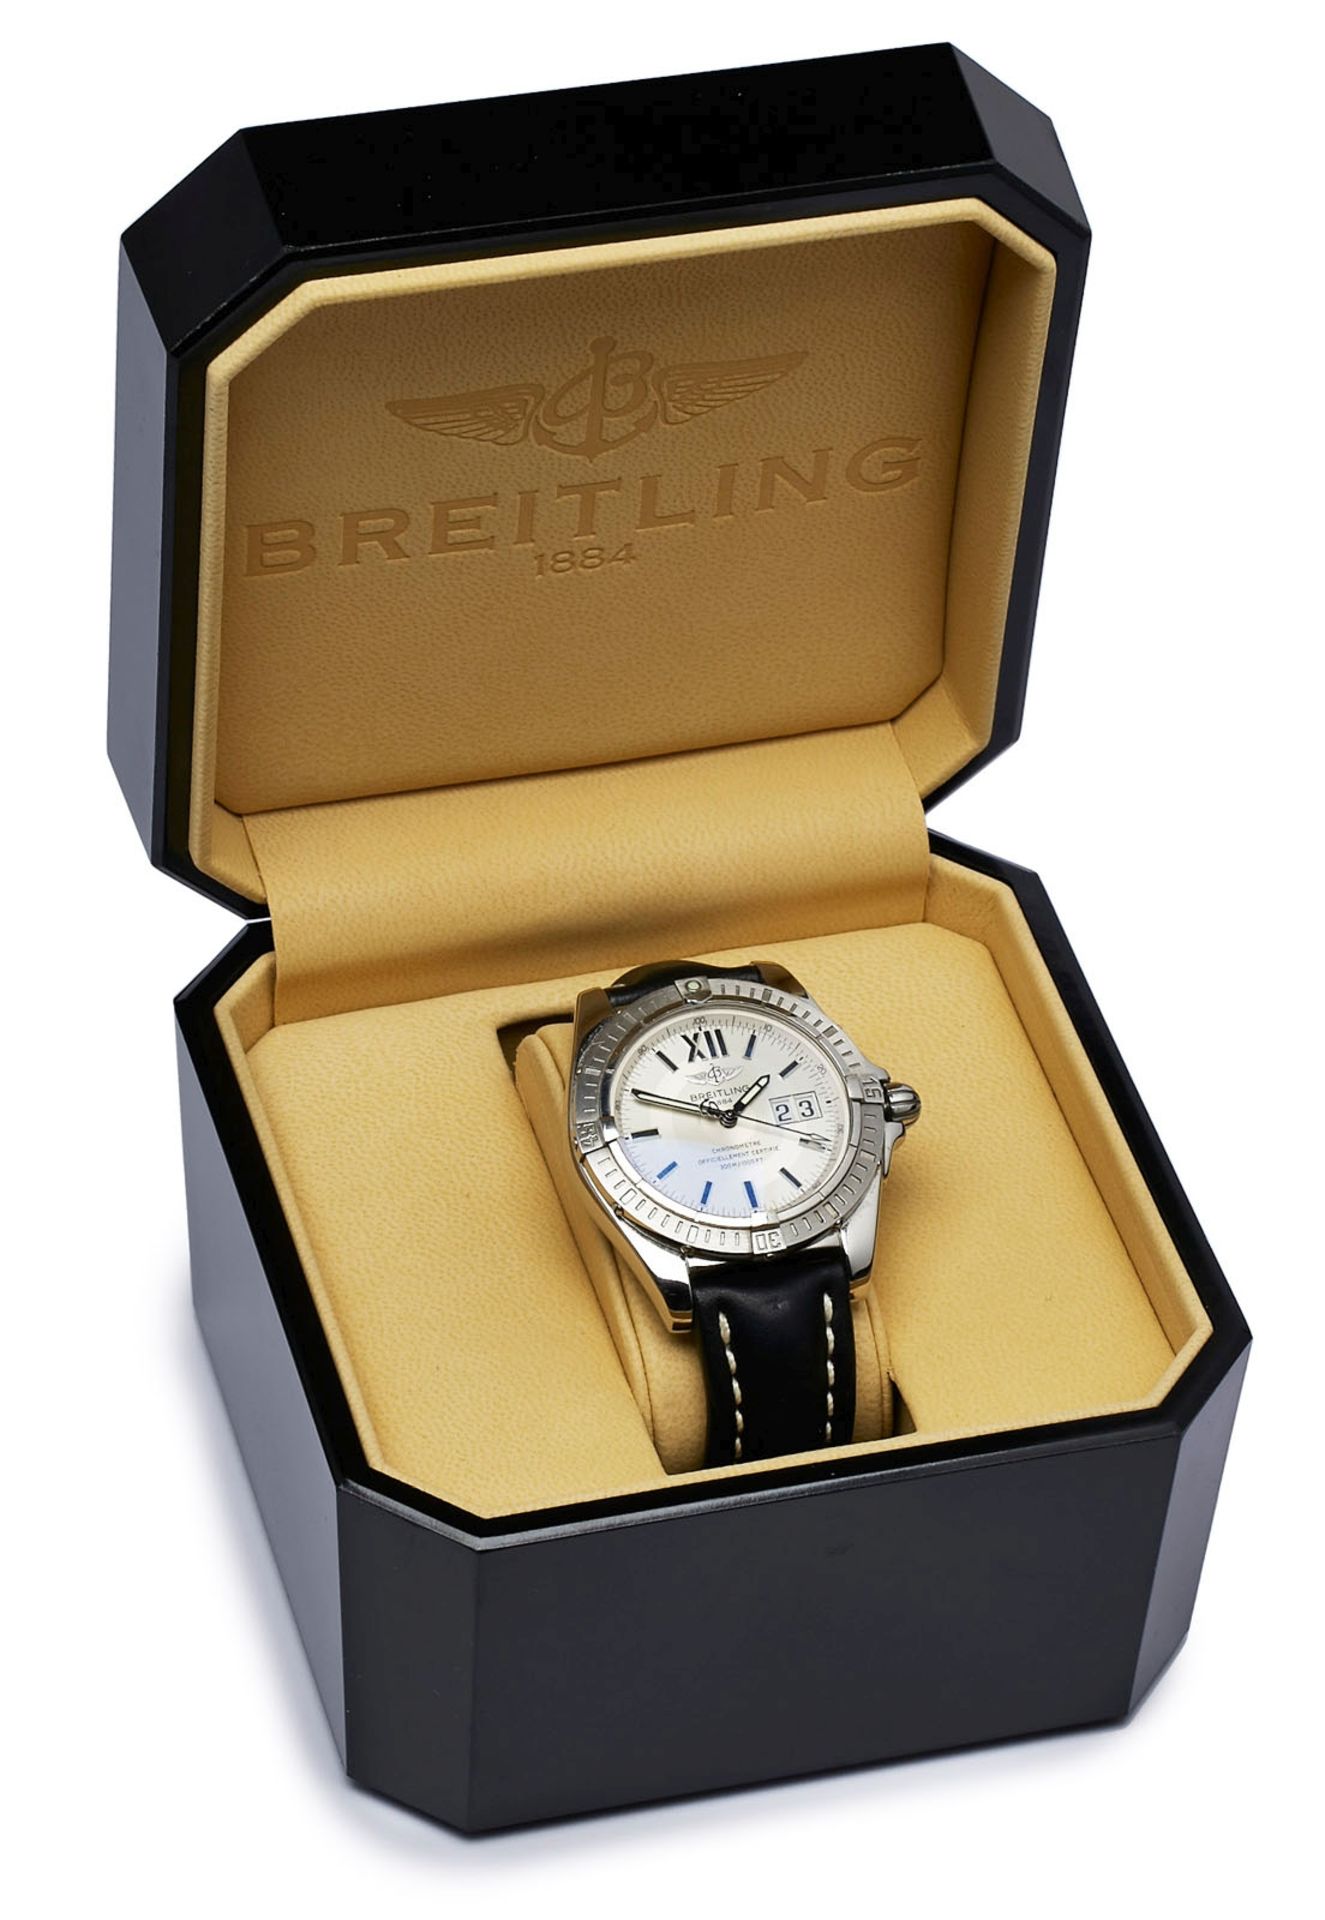 Herrenarmbanduhr/Chronometer Breitling - Image 2 of 2